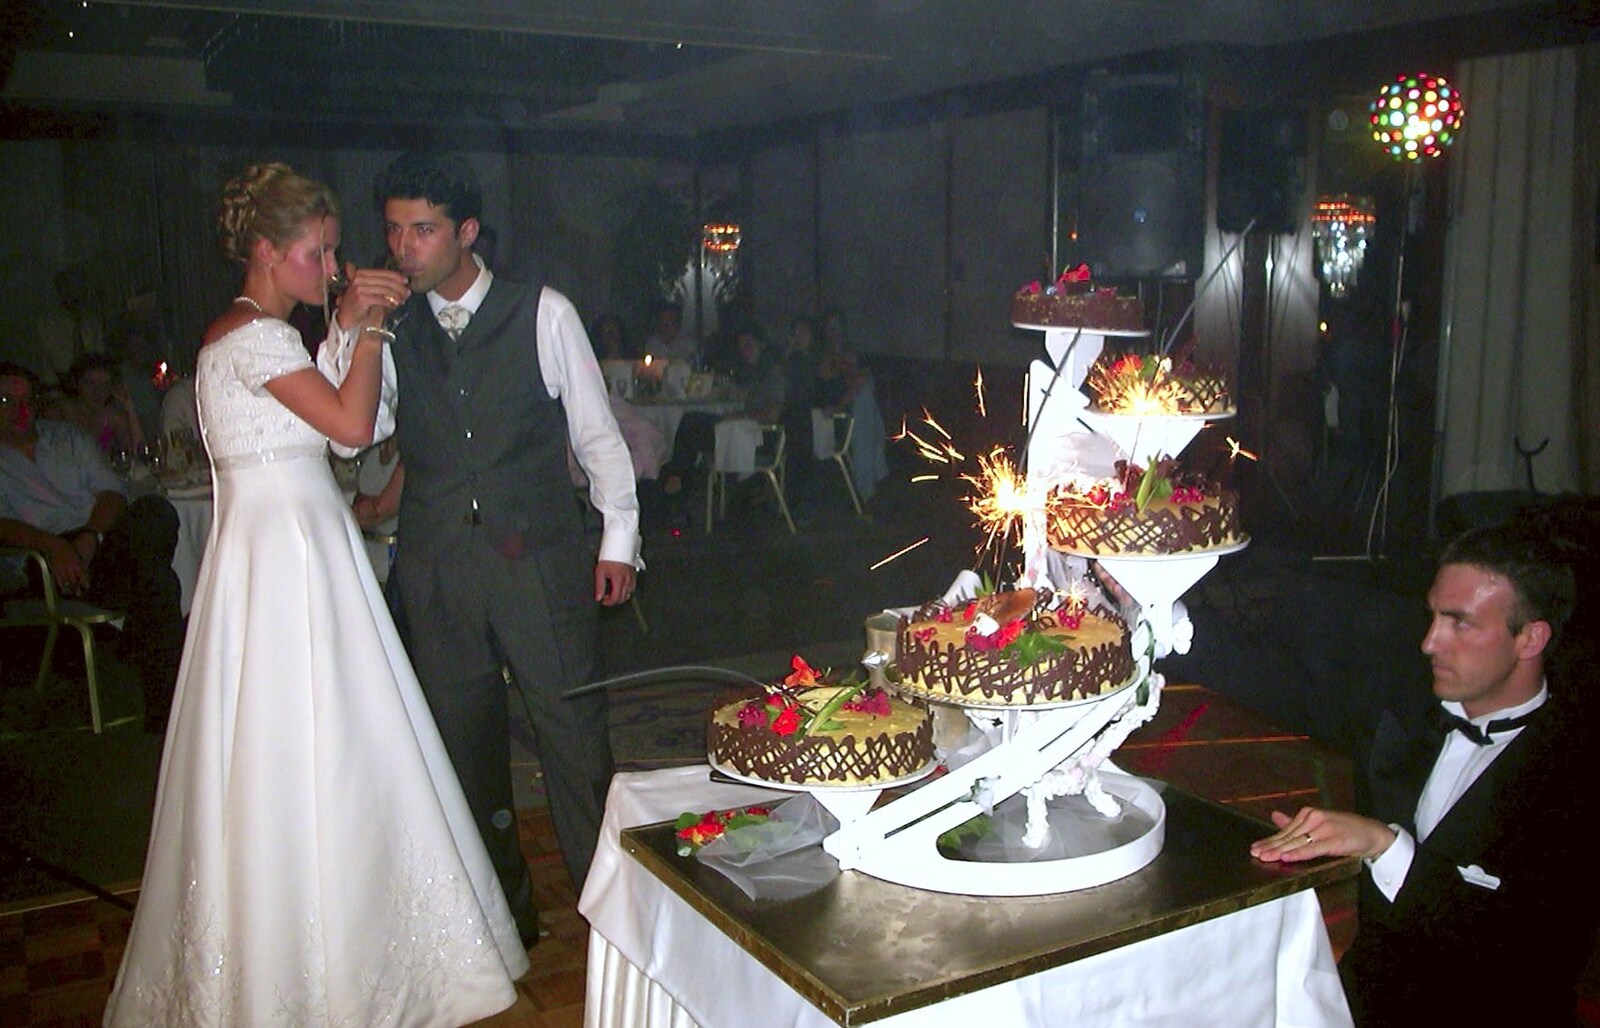 The sparkling cake from Elisa and Luigi's Wedding, Carouge, Geneva, Switzerland - 20th July 2001